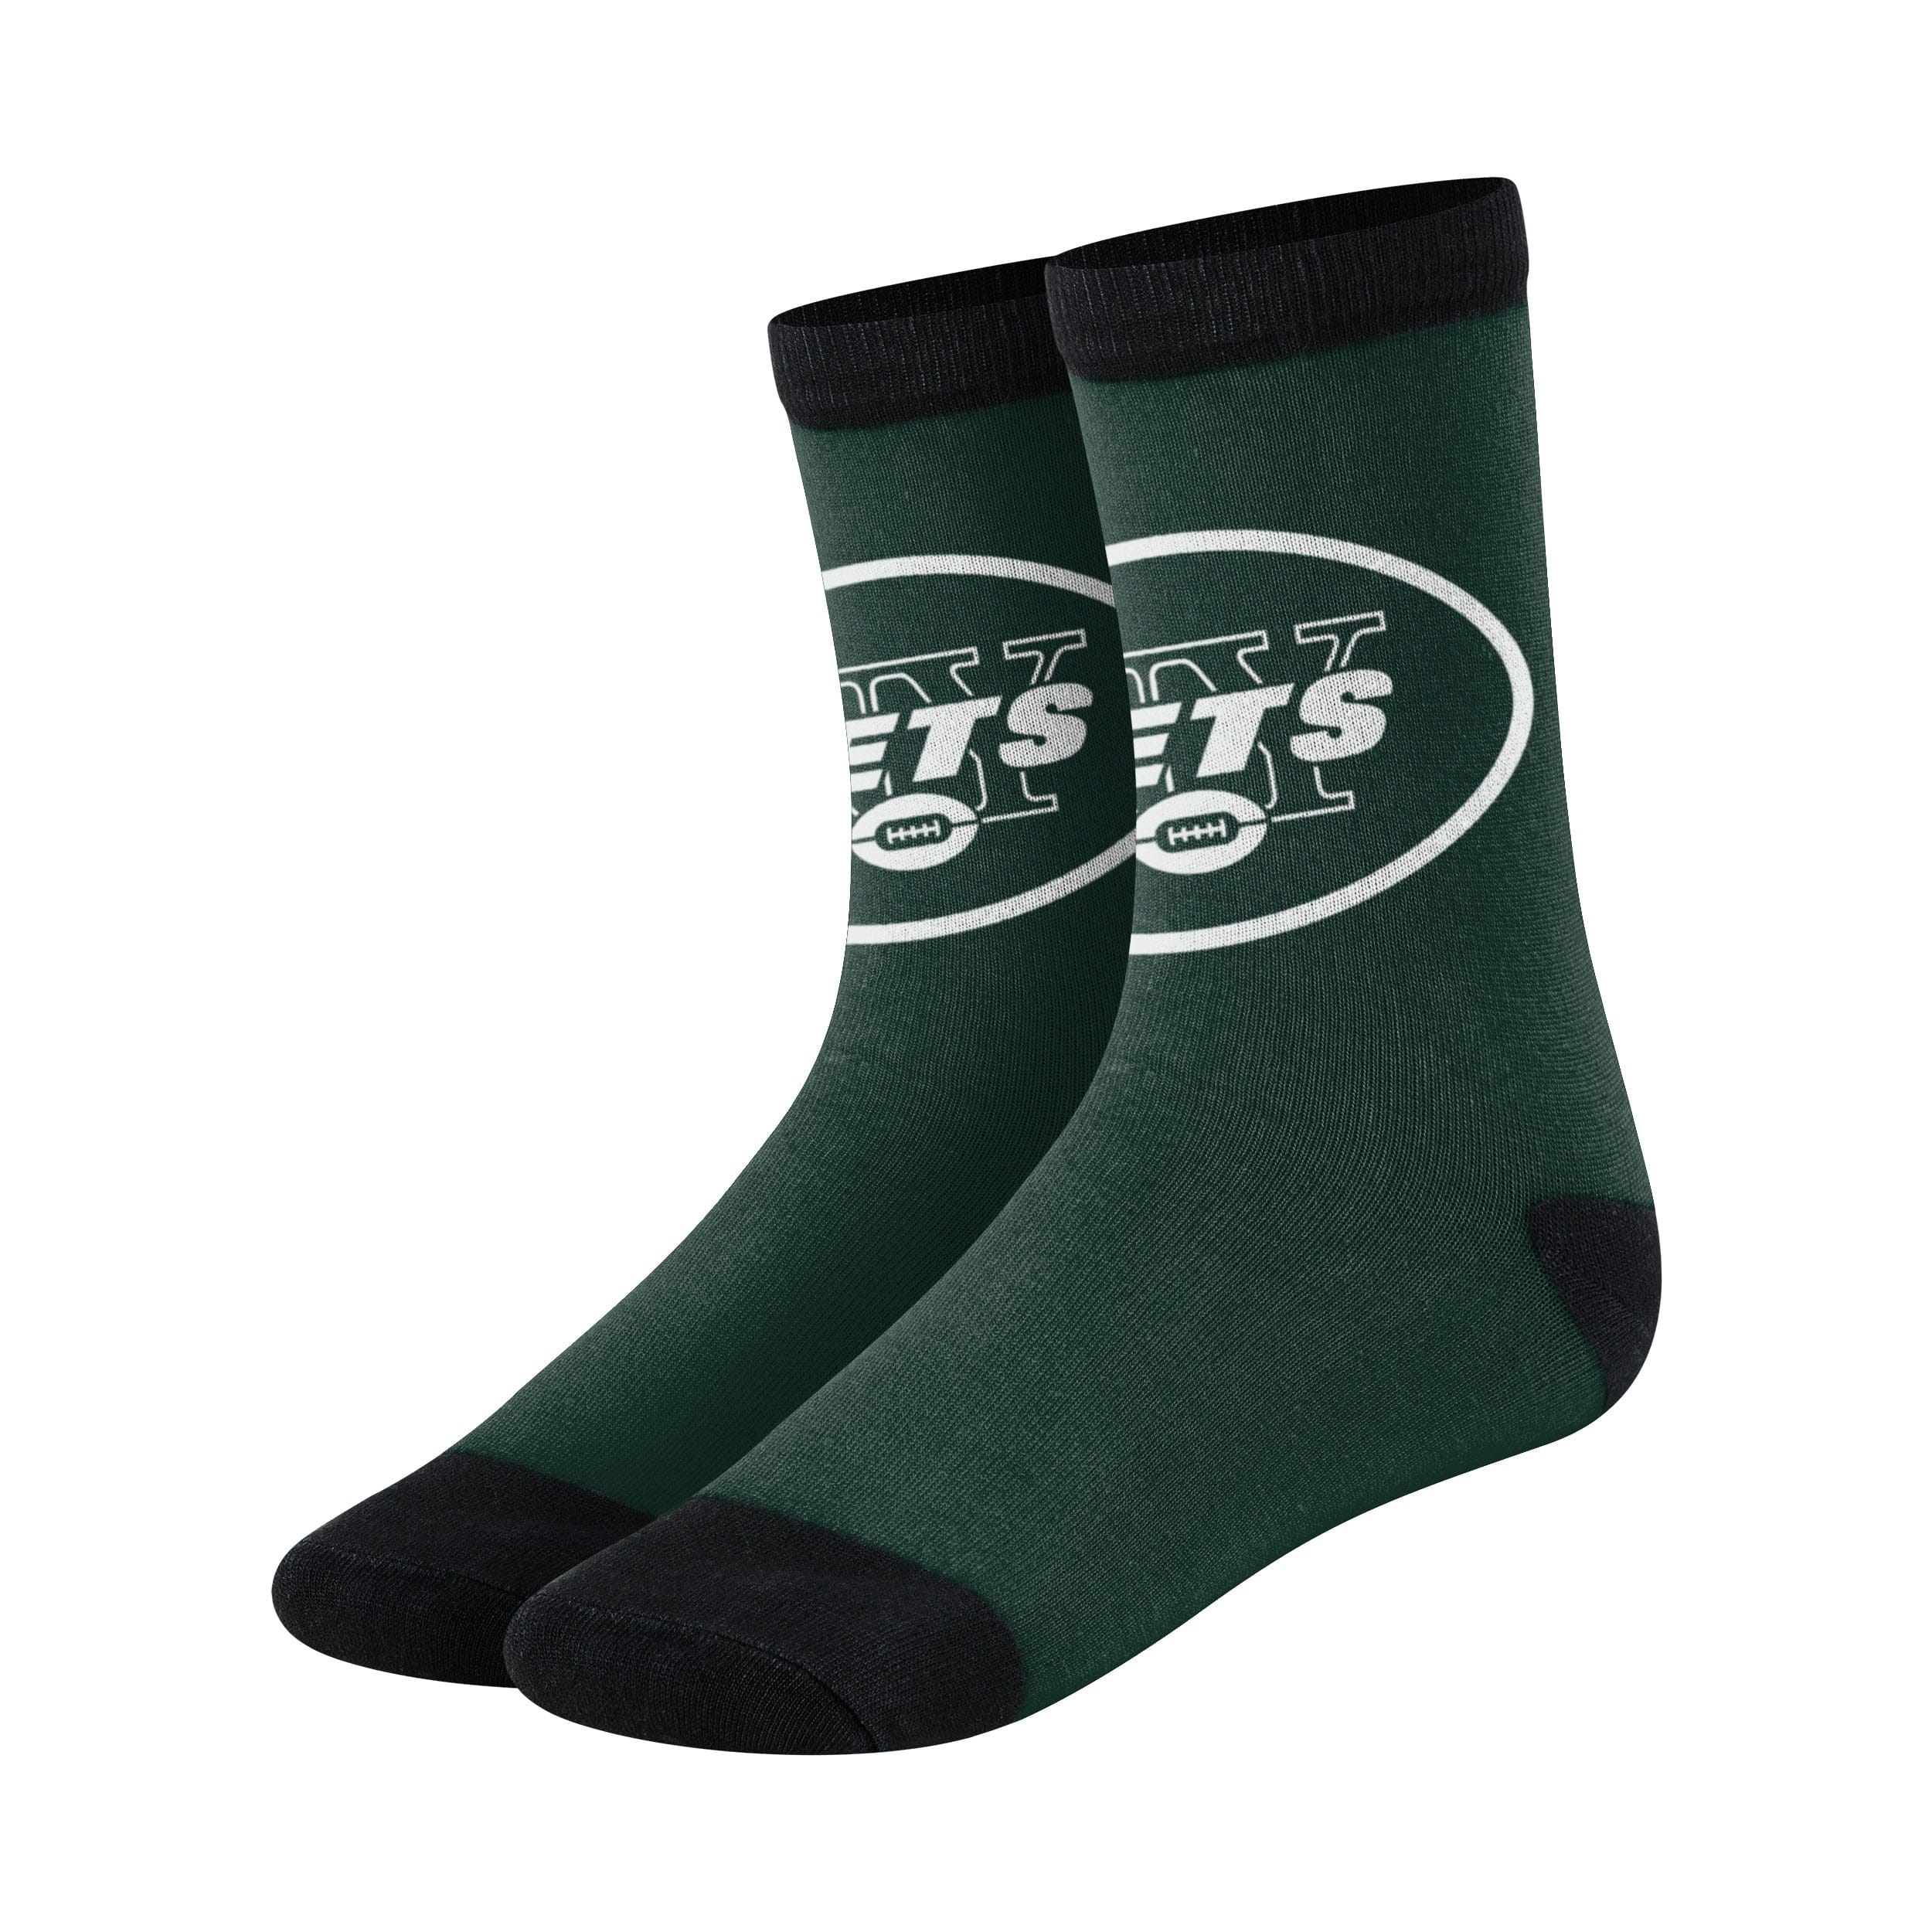 New York Jets NFL Primetime Socks